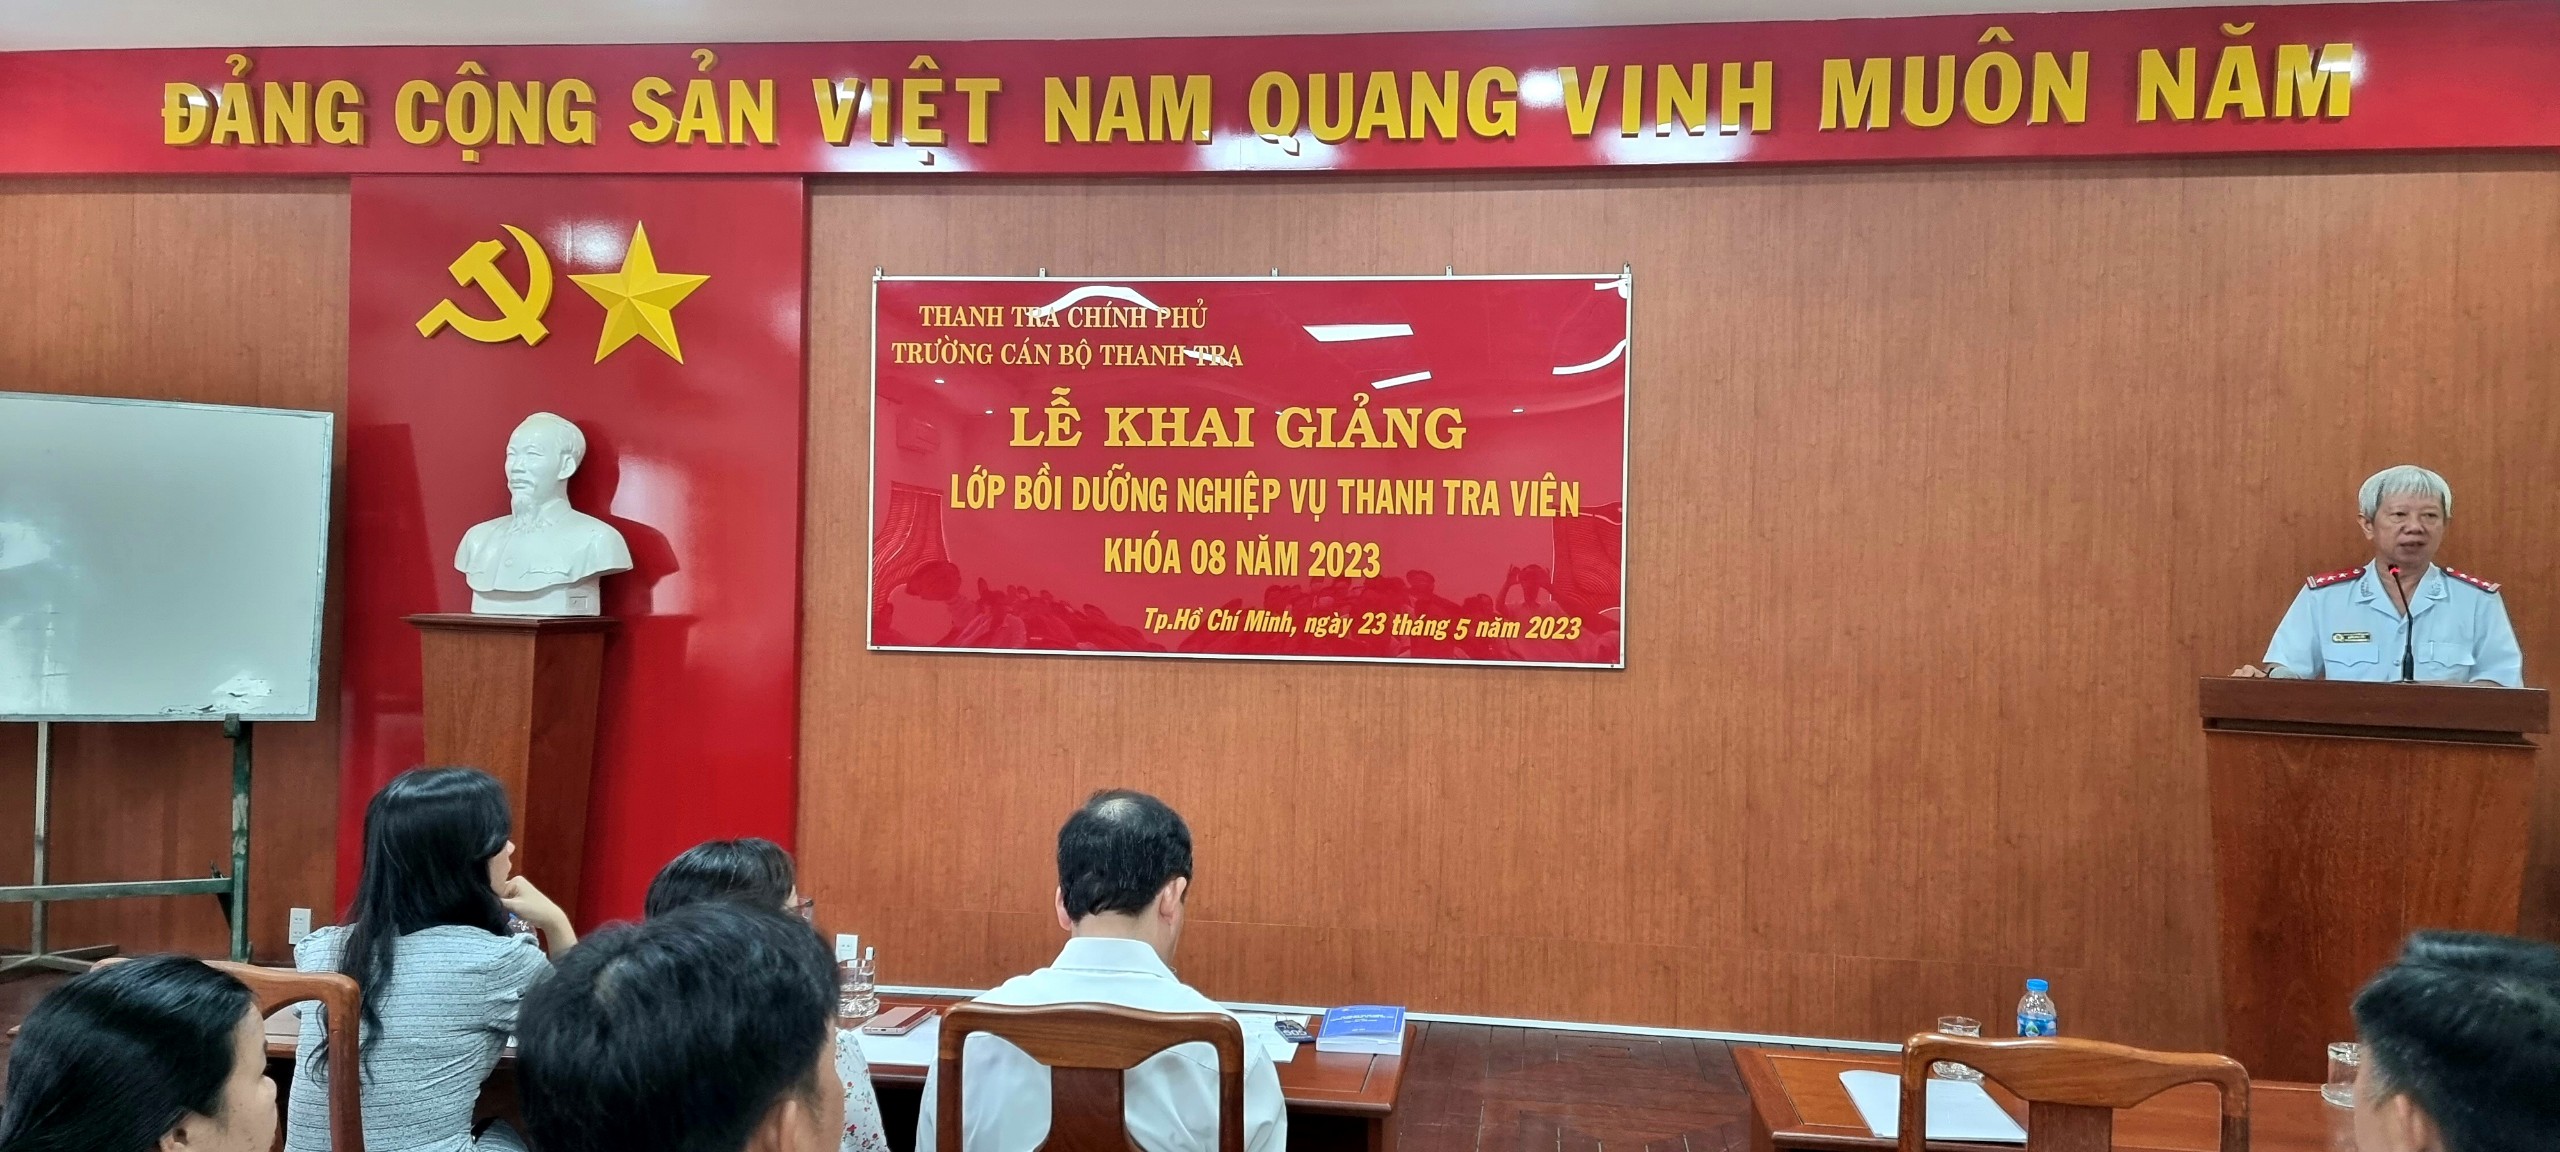 Khai giảng lớp bồi dưỡng nghiệp vụ Thanh tra viên K8 năm 2023 tại Thành phố Hồ Chí Minh